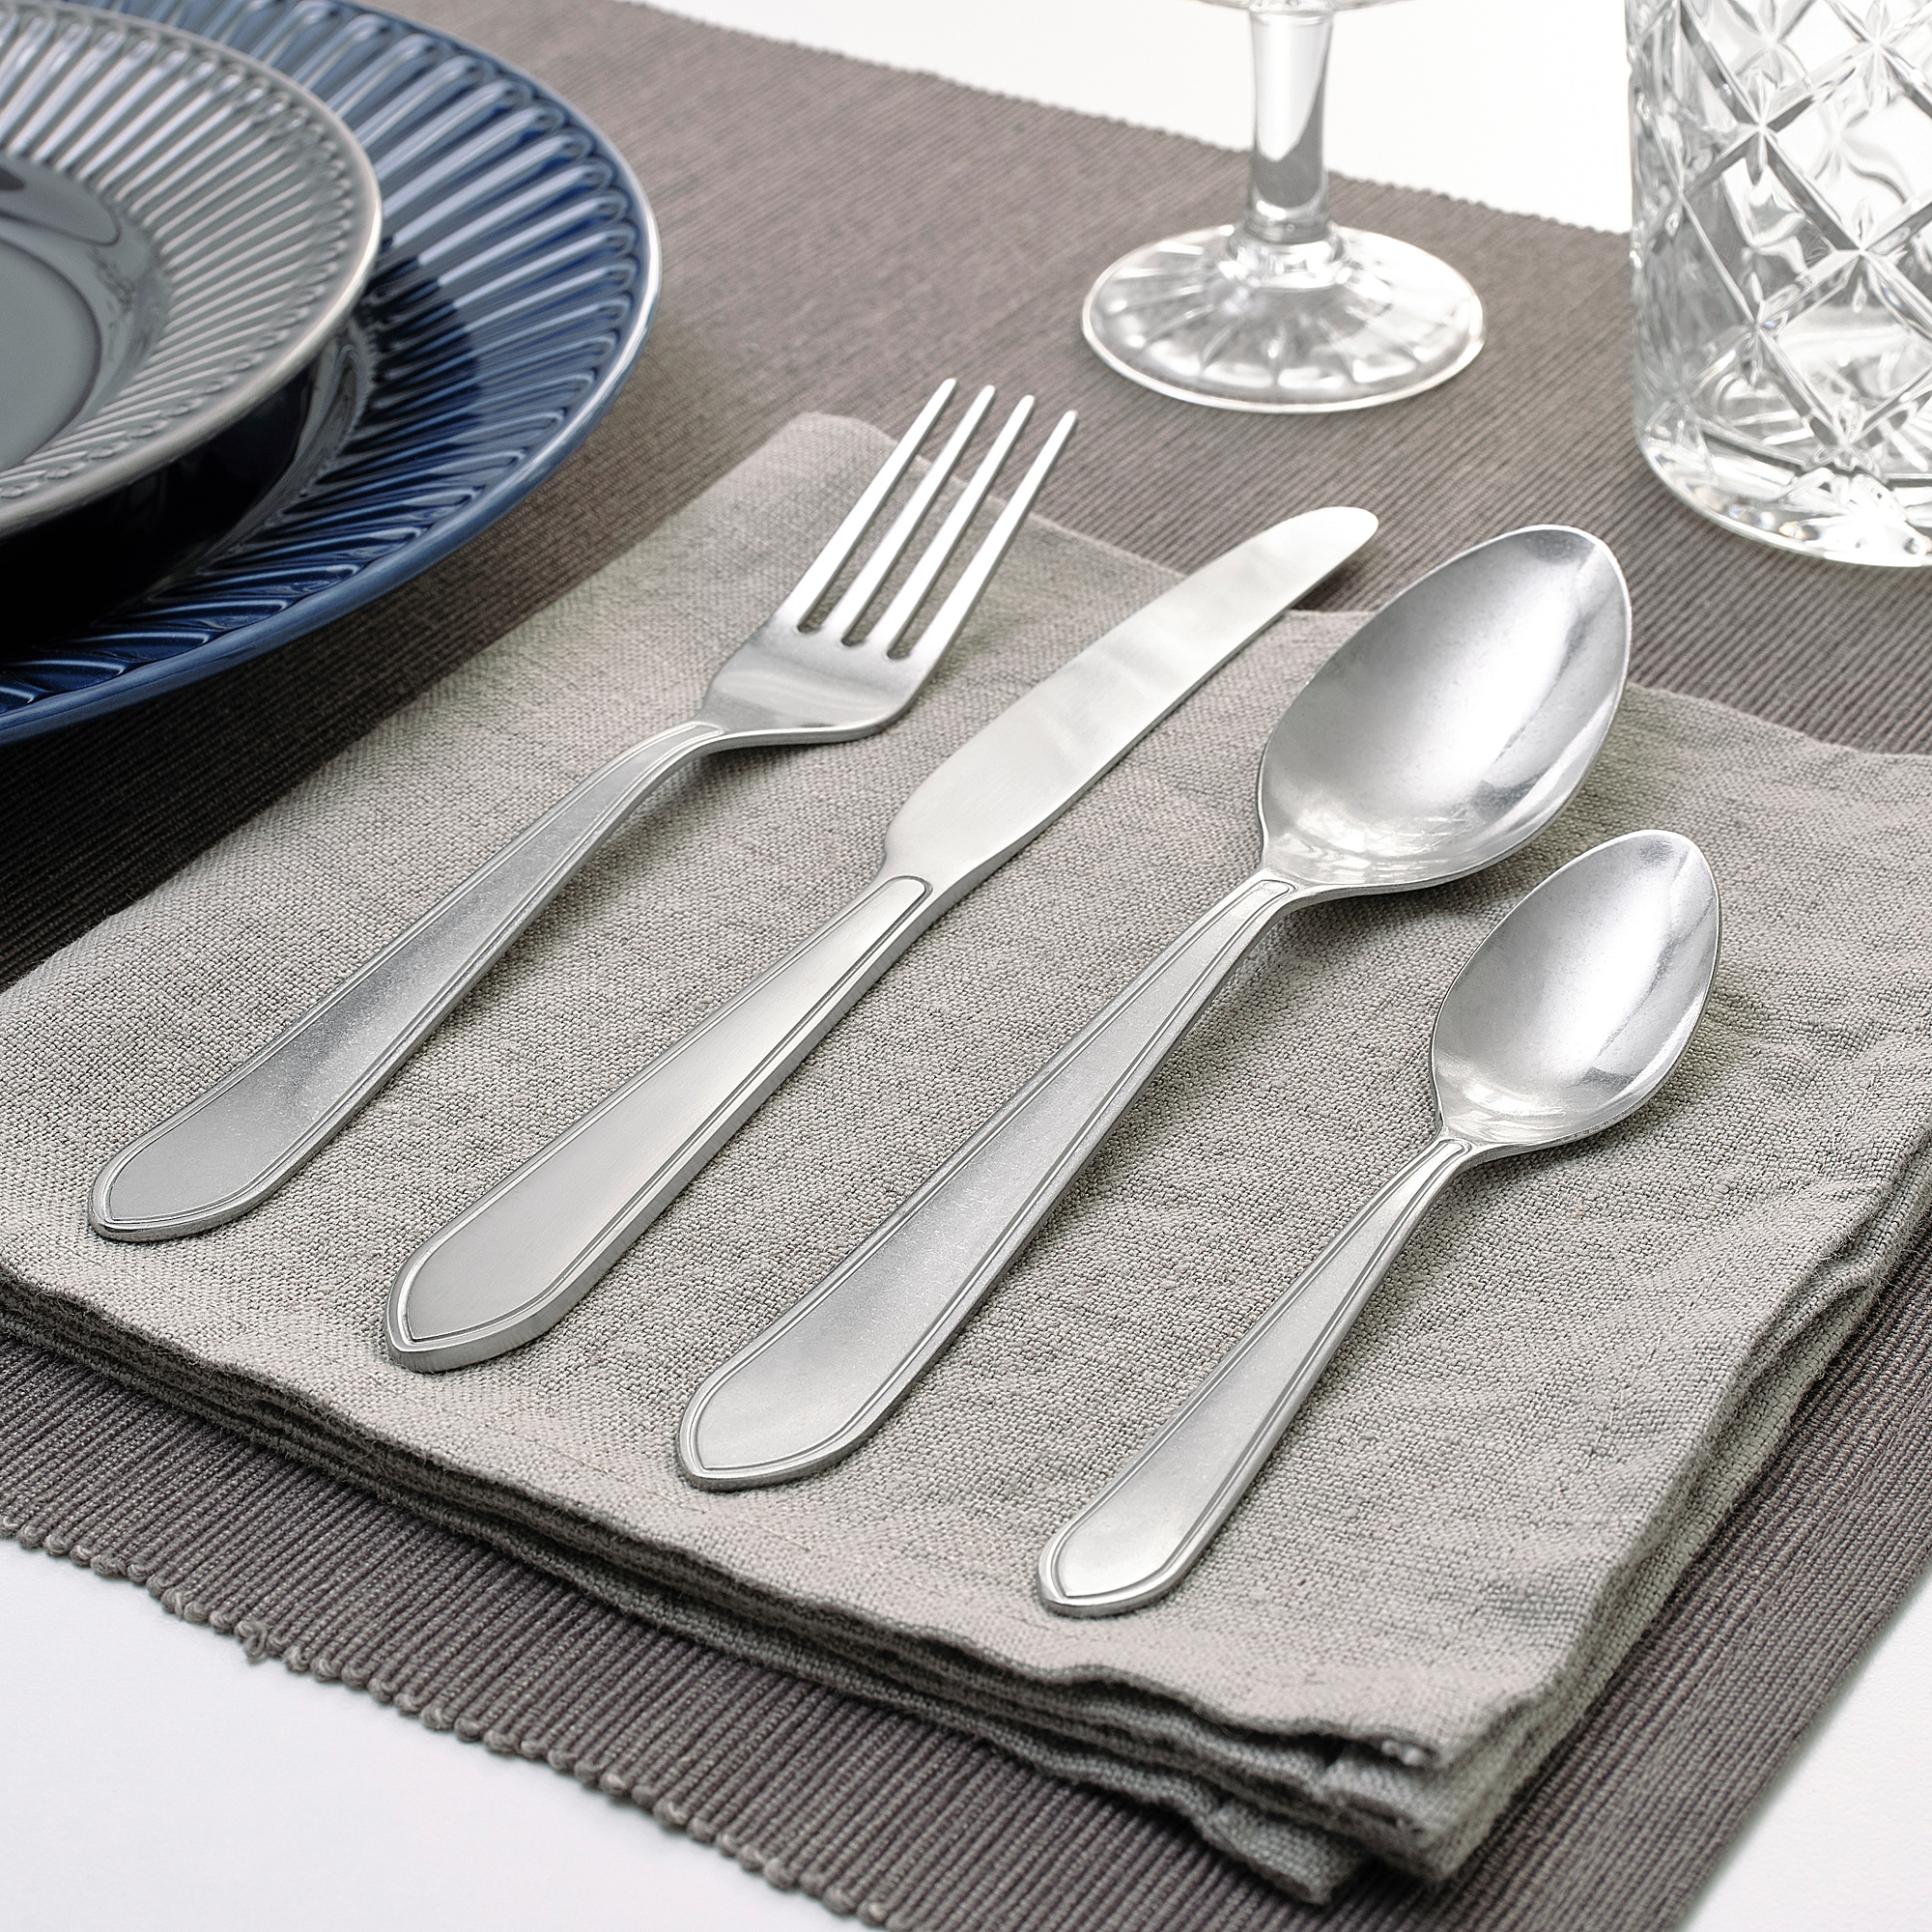 IDENTITET 16-piece cutlery set